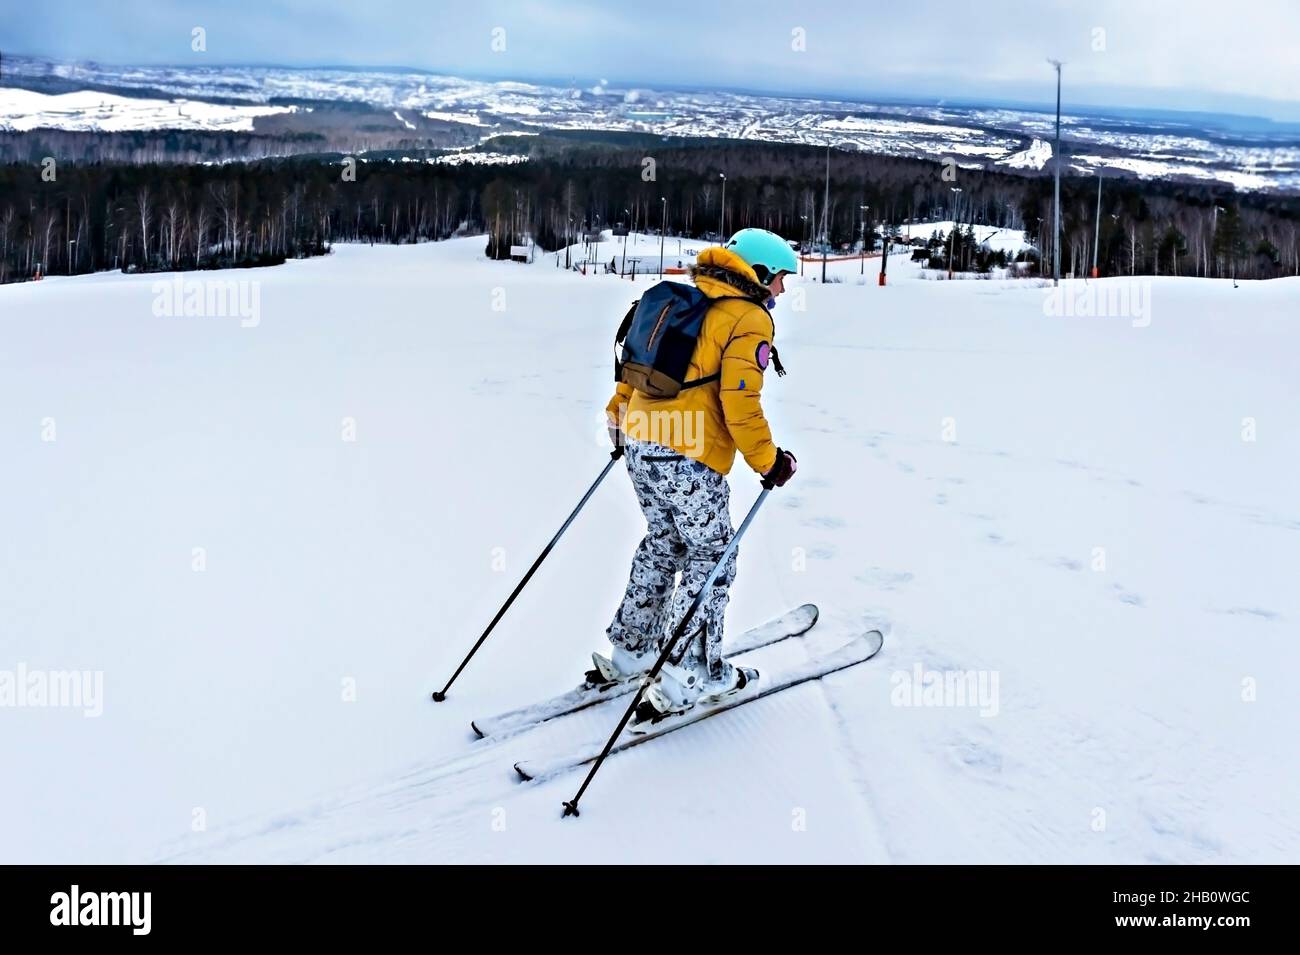 Jeune femme en blouson jaune et casque de ski ski ski ski sur une piste de montagne, sports d'hiver, ski alpin en plein air, un mode de vie sain et actif Banque D'Images